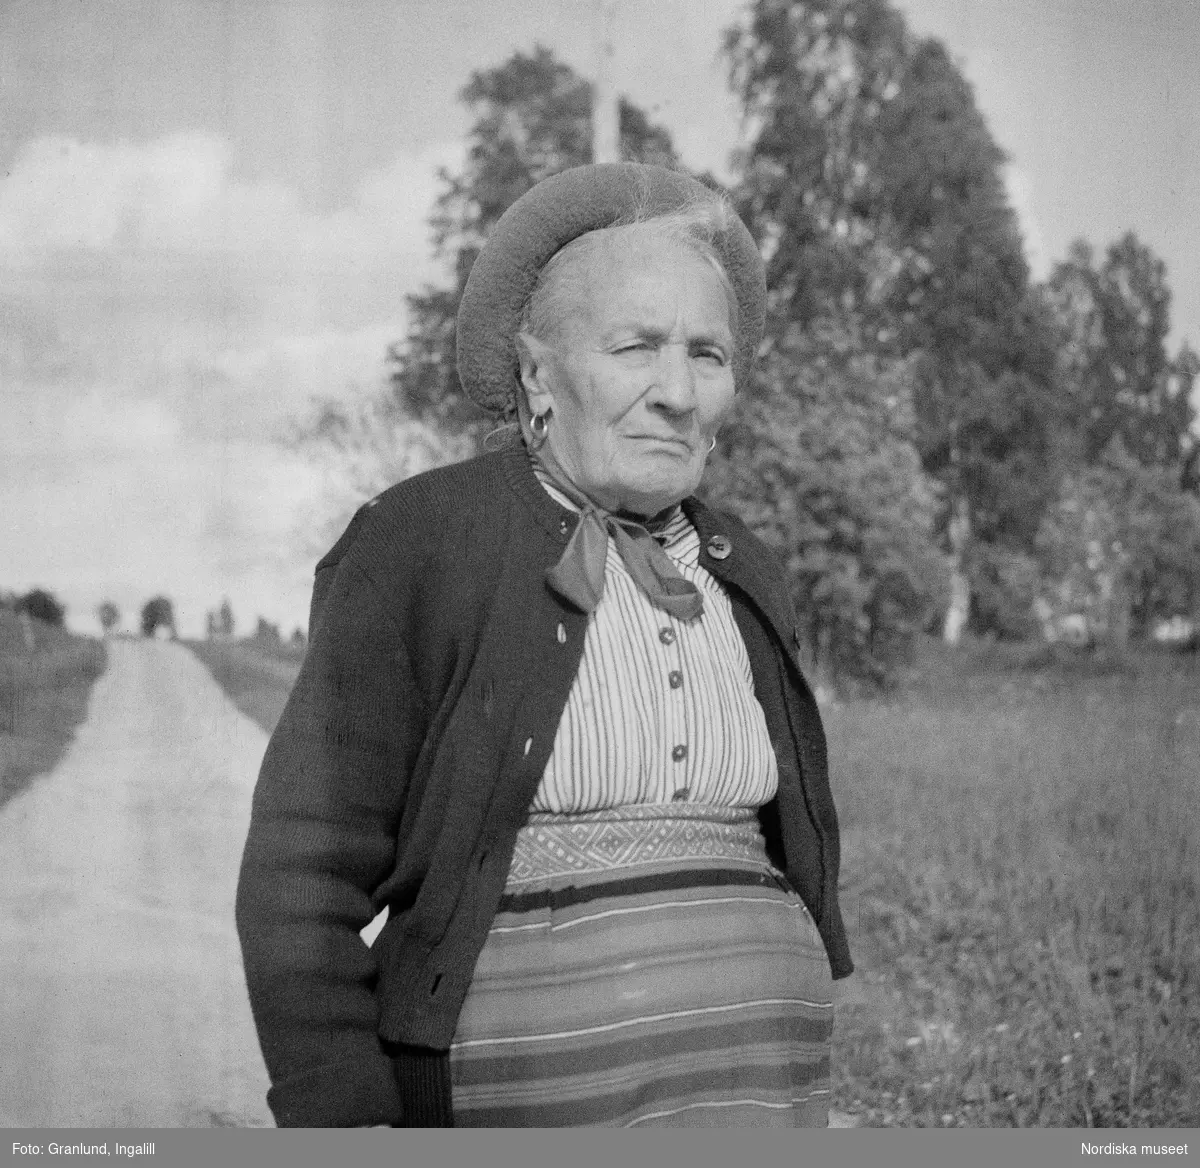 Pergården (tidigare Sjonsgård) i Osmundsbergs by i Boda socken, Dalarna. Fräs Kerstin (Kirstin) Jonsson klädd i yllekofta och smårandig blus, men med mössa, kjol och förkläde enligt Boda-sed.